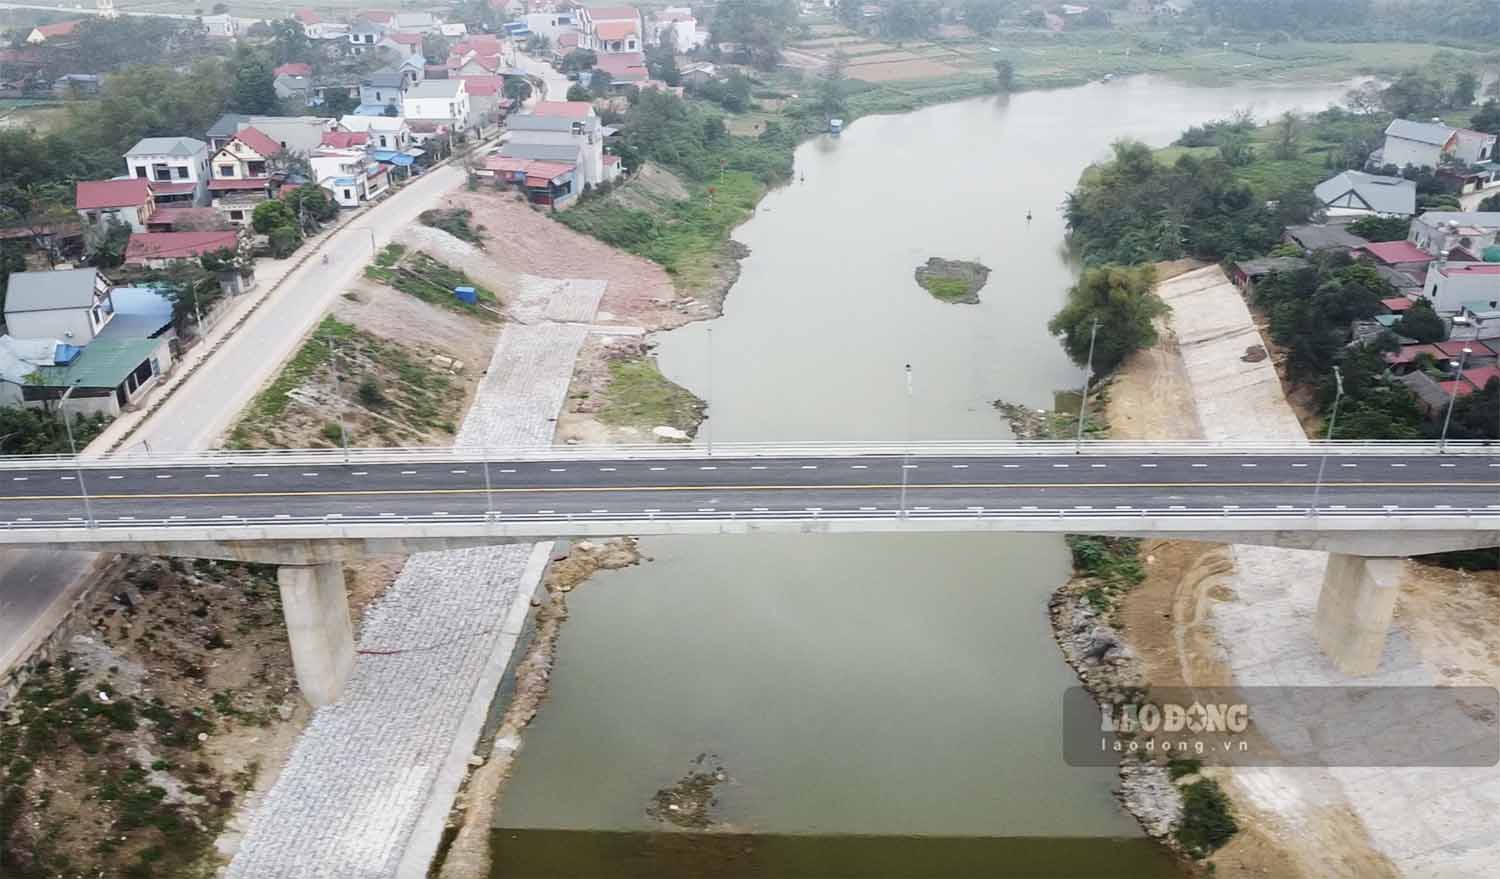 Cầu Hoà Sơn vượt sông Cầu kết nối TP Phổ Yên (Thái Nguyên) với huyện Hiệp Hoà (Bắc Giang) tổng mức đầu tư hơn 540 tỉ đồng, khởi công cuối năm 2022 và dự kiến thông xe trước Tết Nguyên đán 2024.  